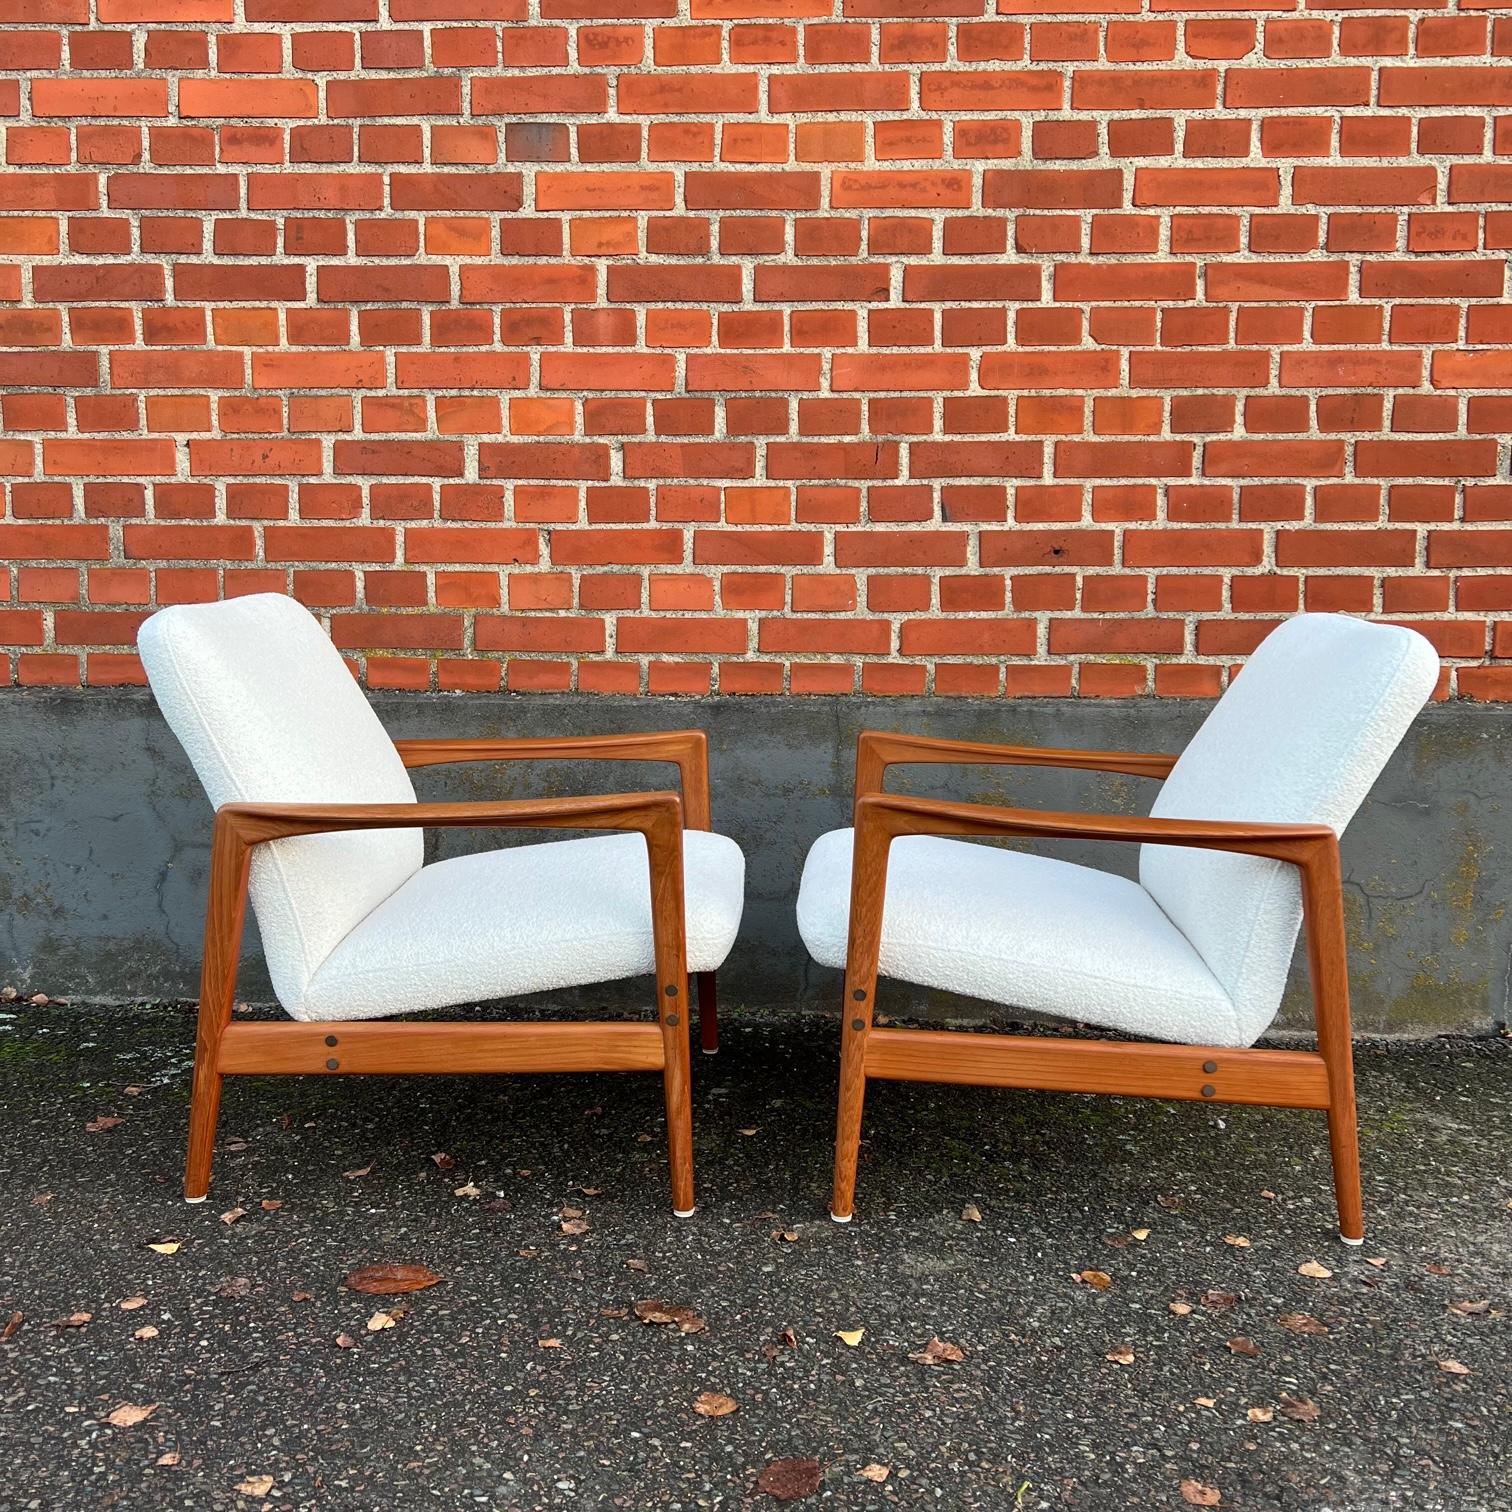 Paire de chaises longues du designer suédois Alf Svensson pour Dux. Les chaises ont été retapissées avec du tissu bouclé et ont été restaurées avec un nouveau padding. 

Les chaises sont très confortables et faciles à déplacer grâce à leur petite